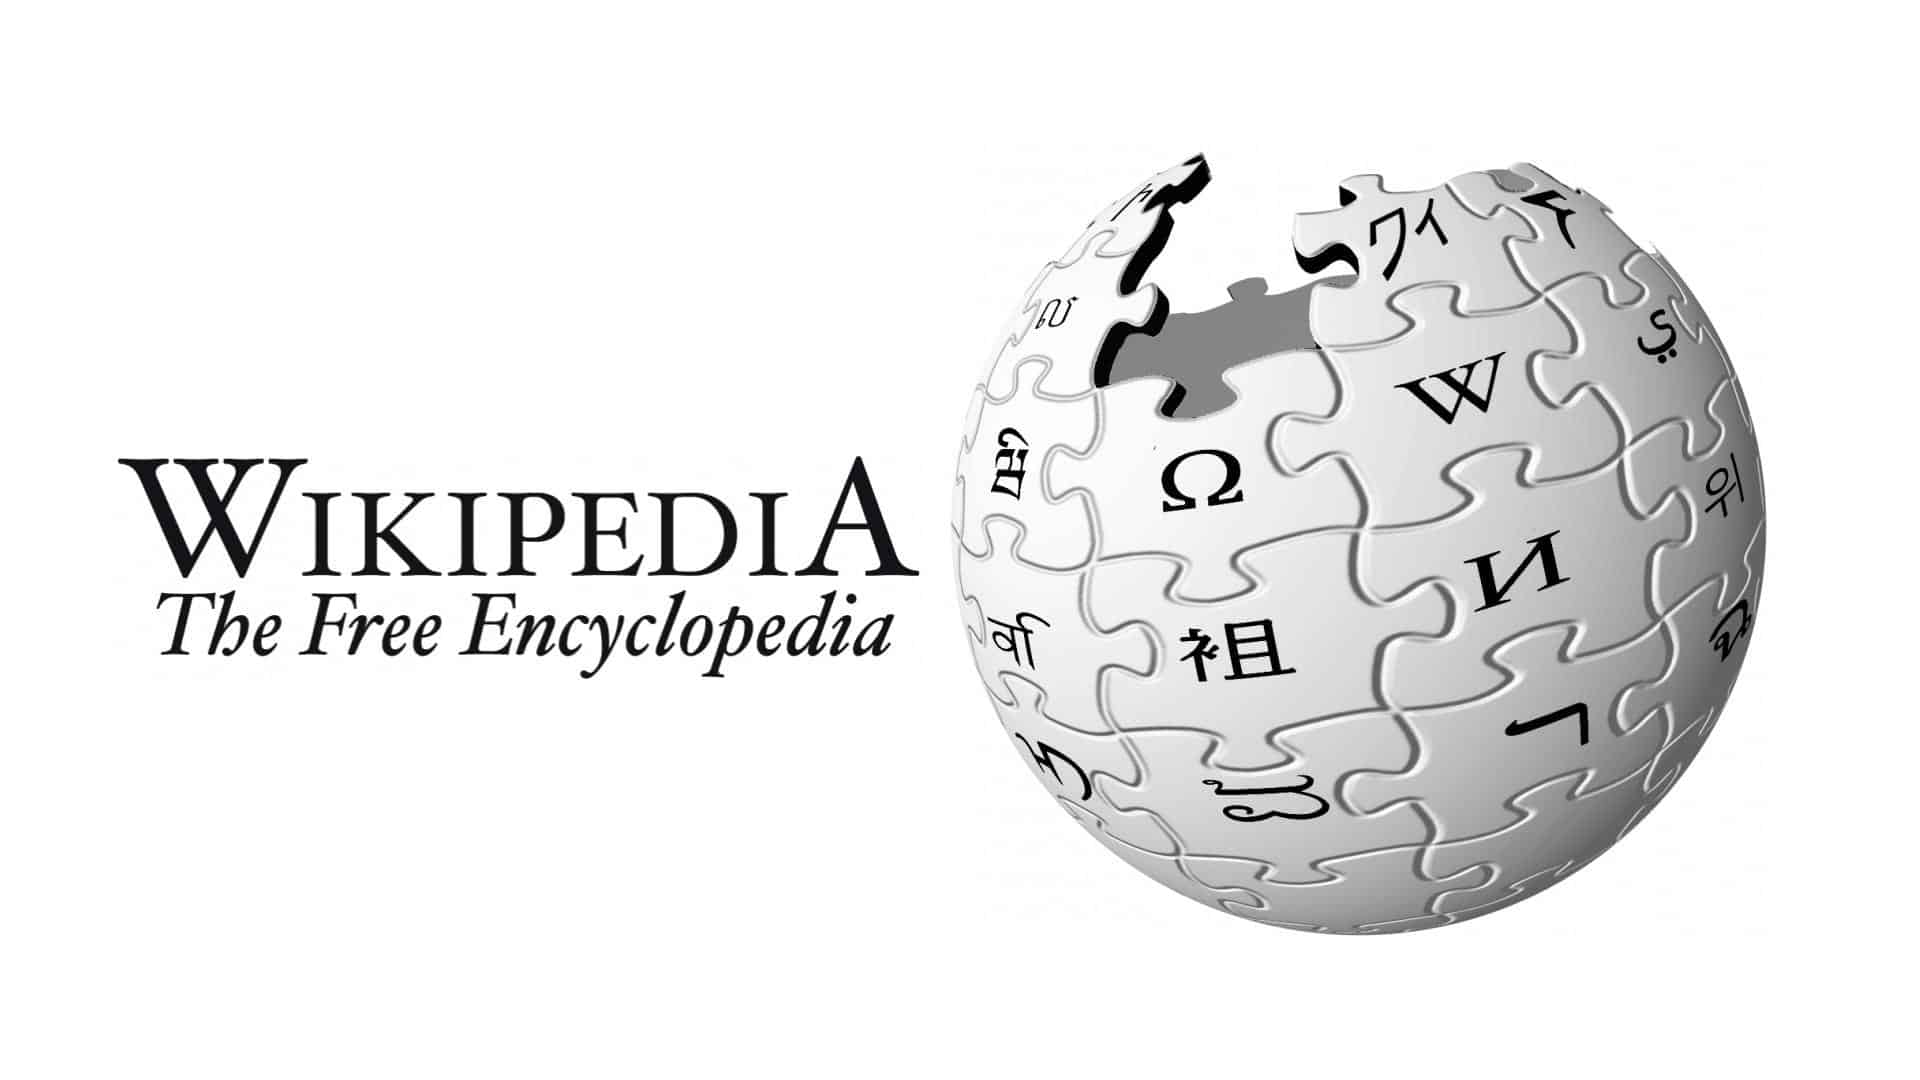 "ويكيبيديا" تحظر هذه الصحيفة الشهيرة: "مصدر غير موثوق"